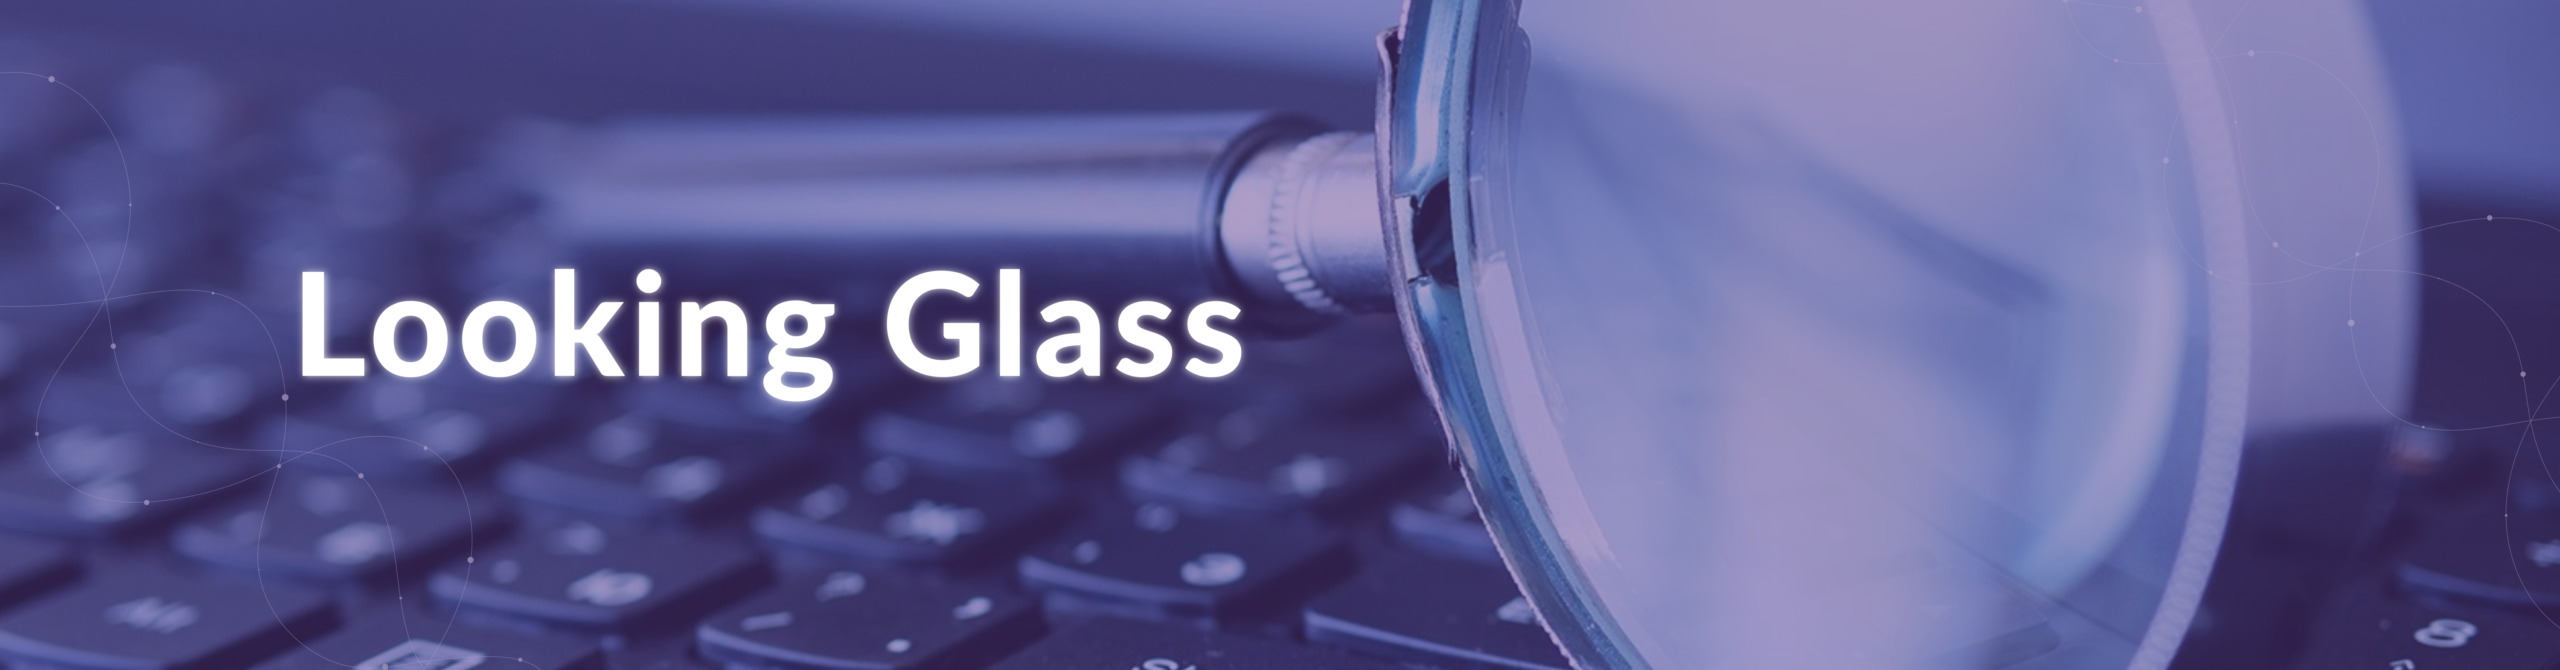 Looking Glass, una herramienta de troubleshooting crucial